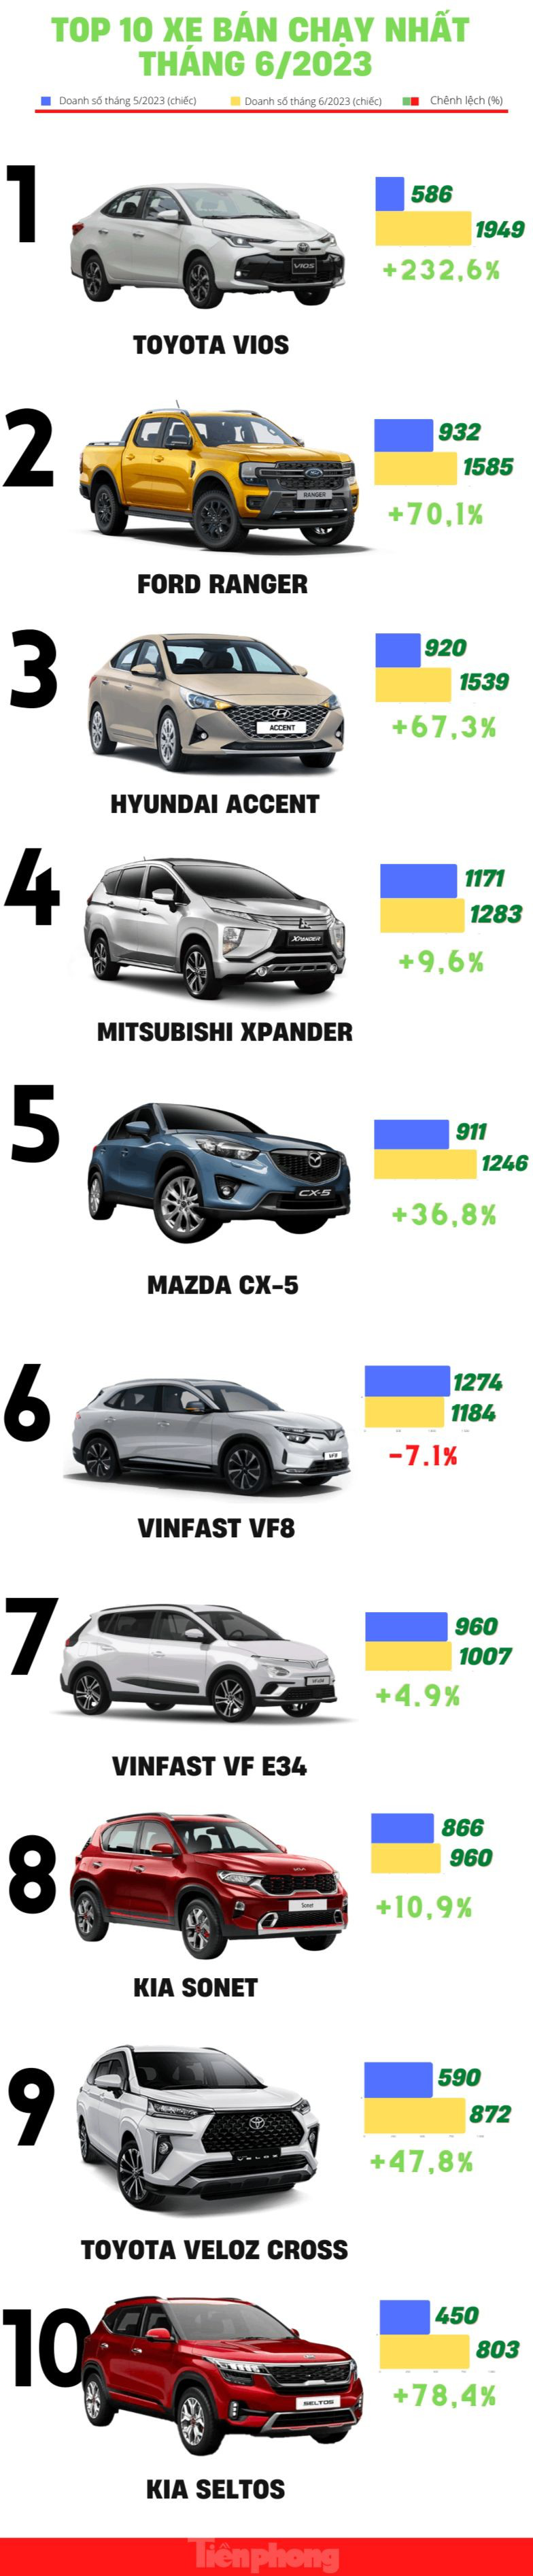 Top 10 ô tô bán chạy nhất tháng 6 tại Việt Nam - Ảnh 1.